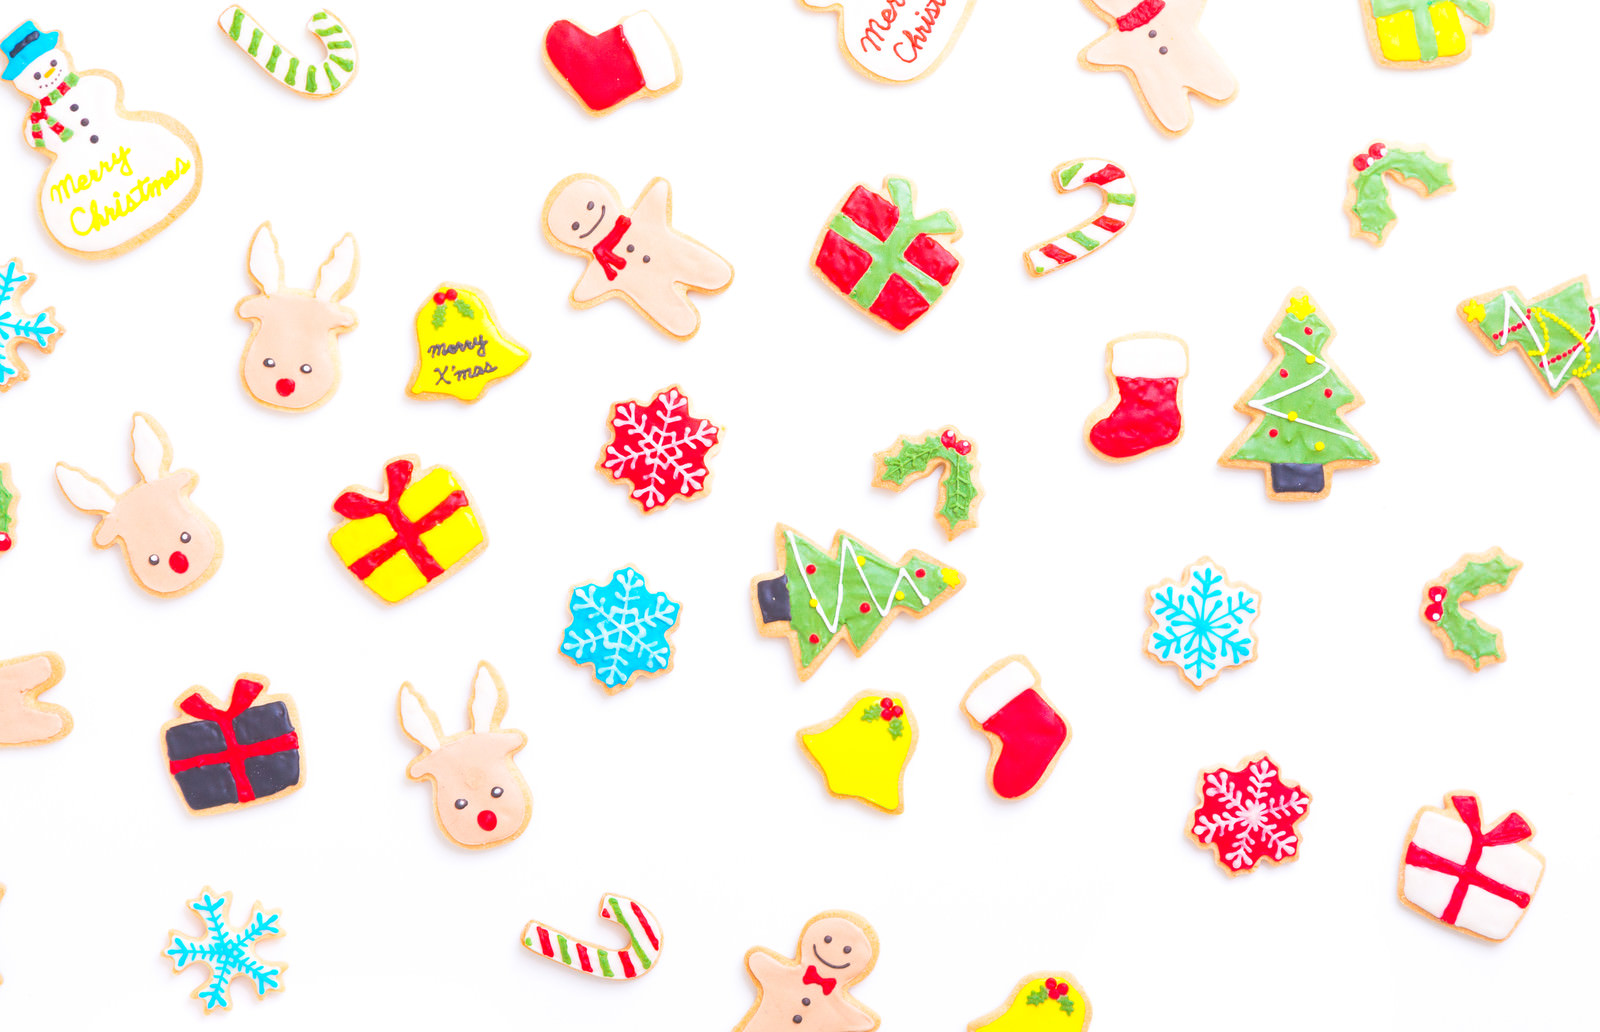 クリスマス用手作りアイシングクッキー 無料の写真素材はフリー素材の